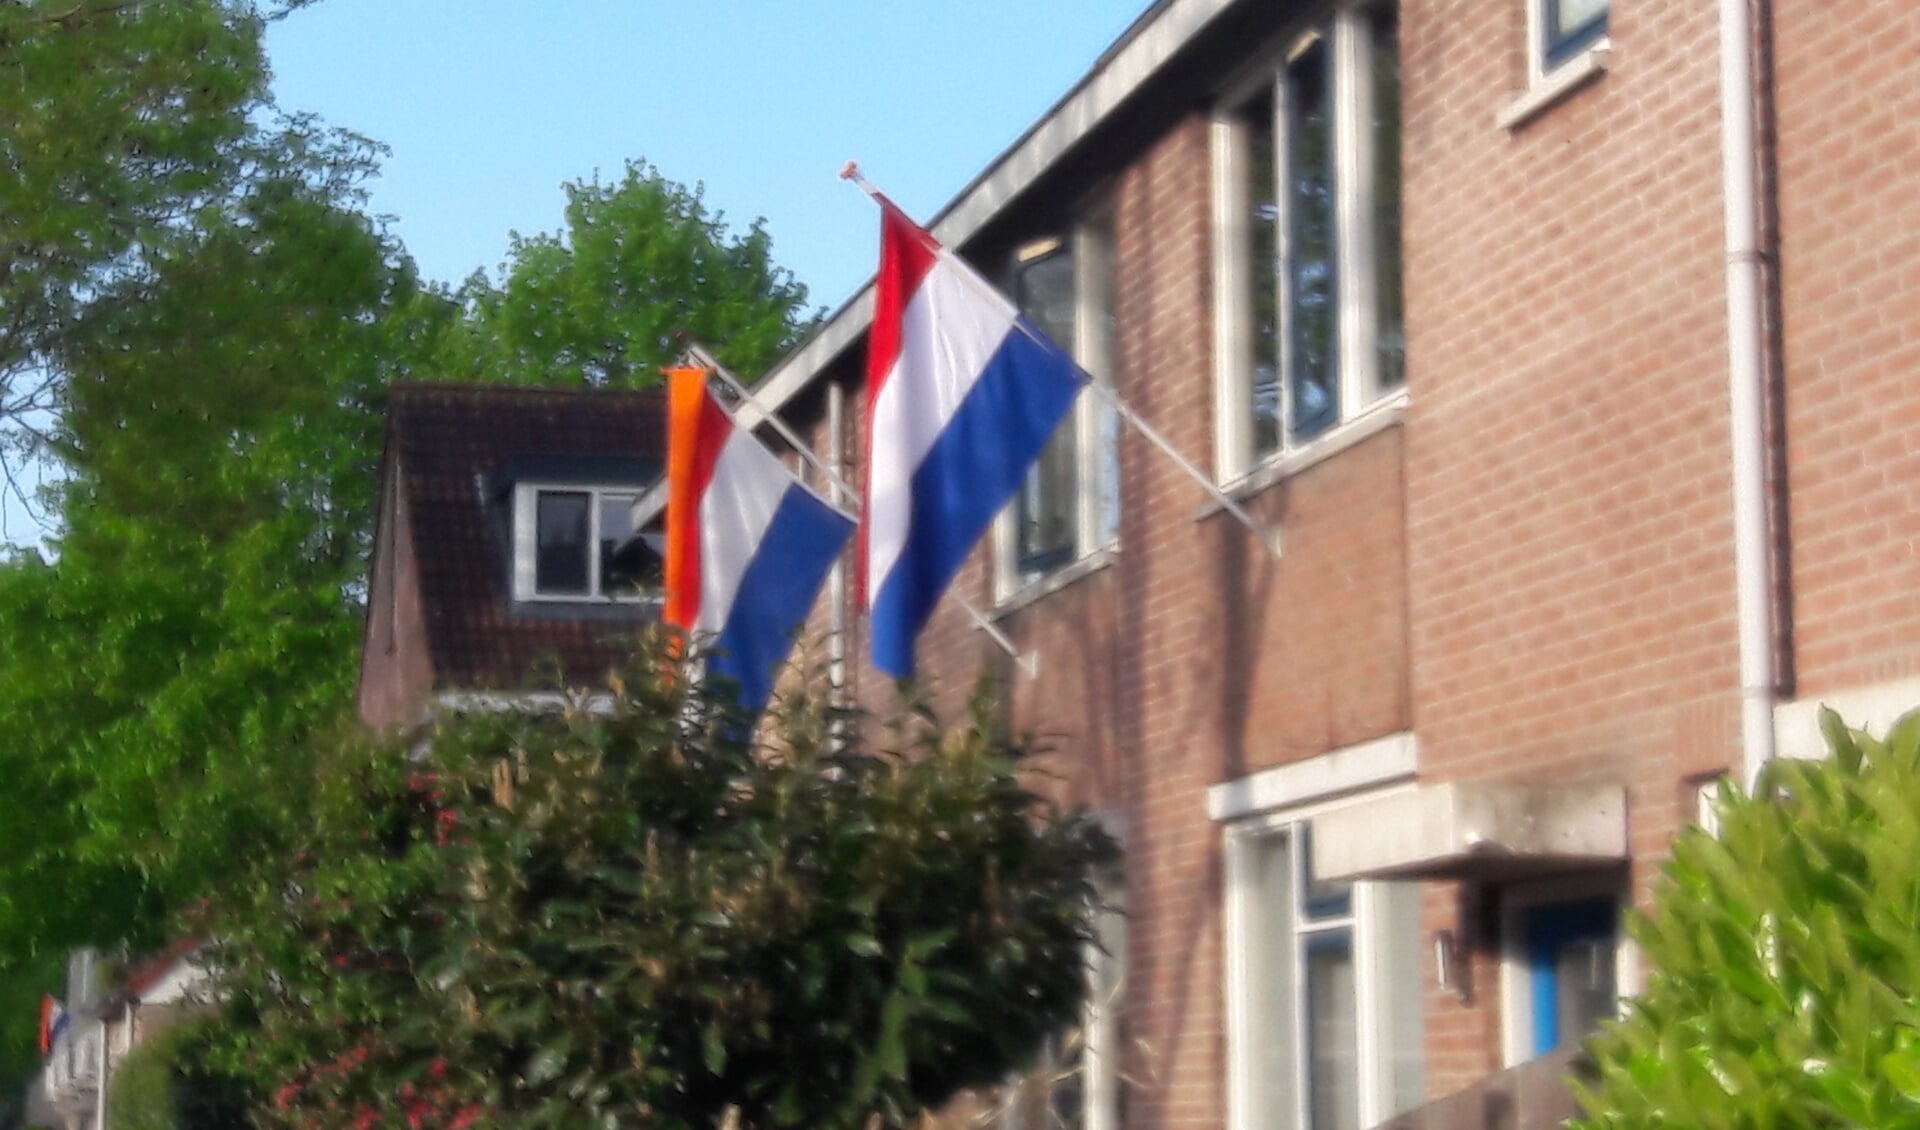 De vele vlaggen leveren een vrolijk straatbeeld op